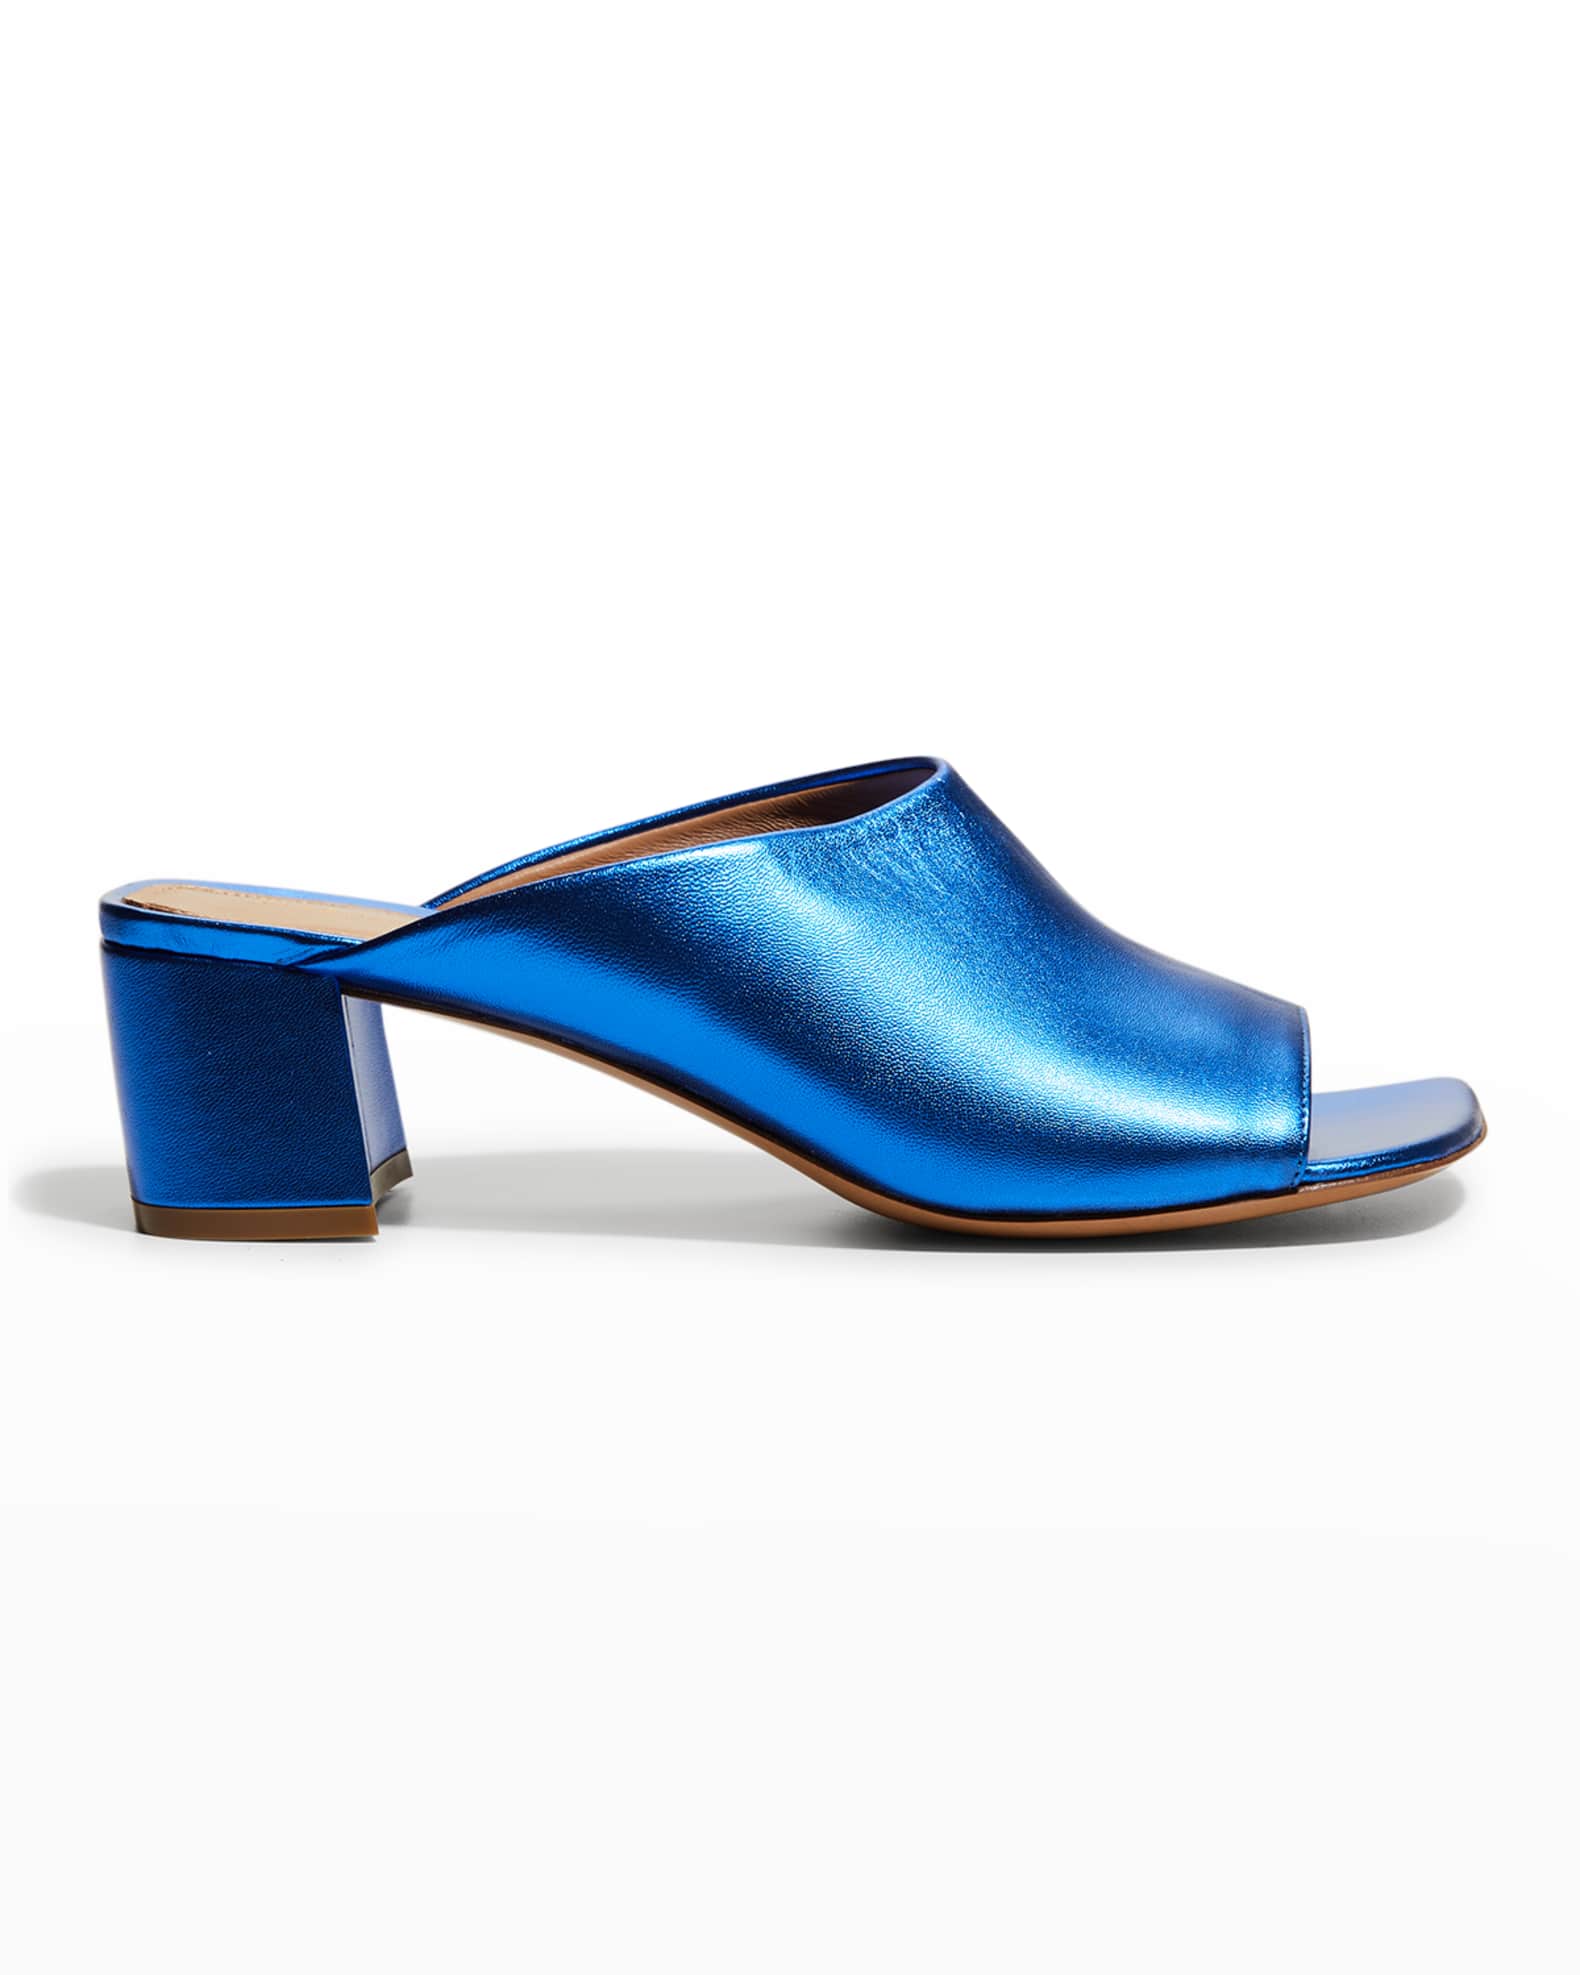 Dries Van Noten Metallic Calfskin Mule Sandals | Neiman Marcus